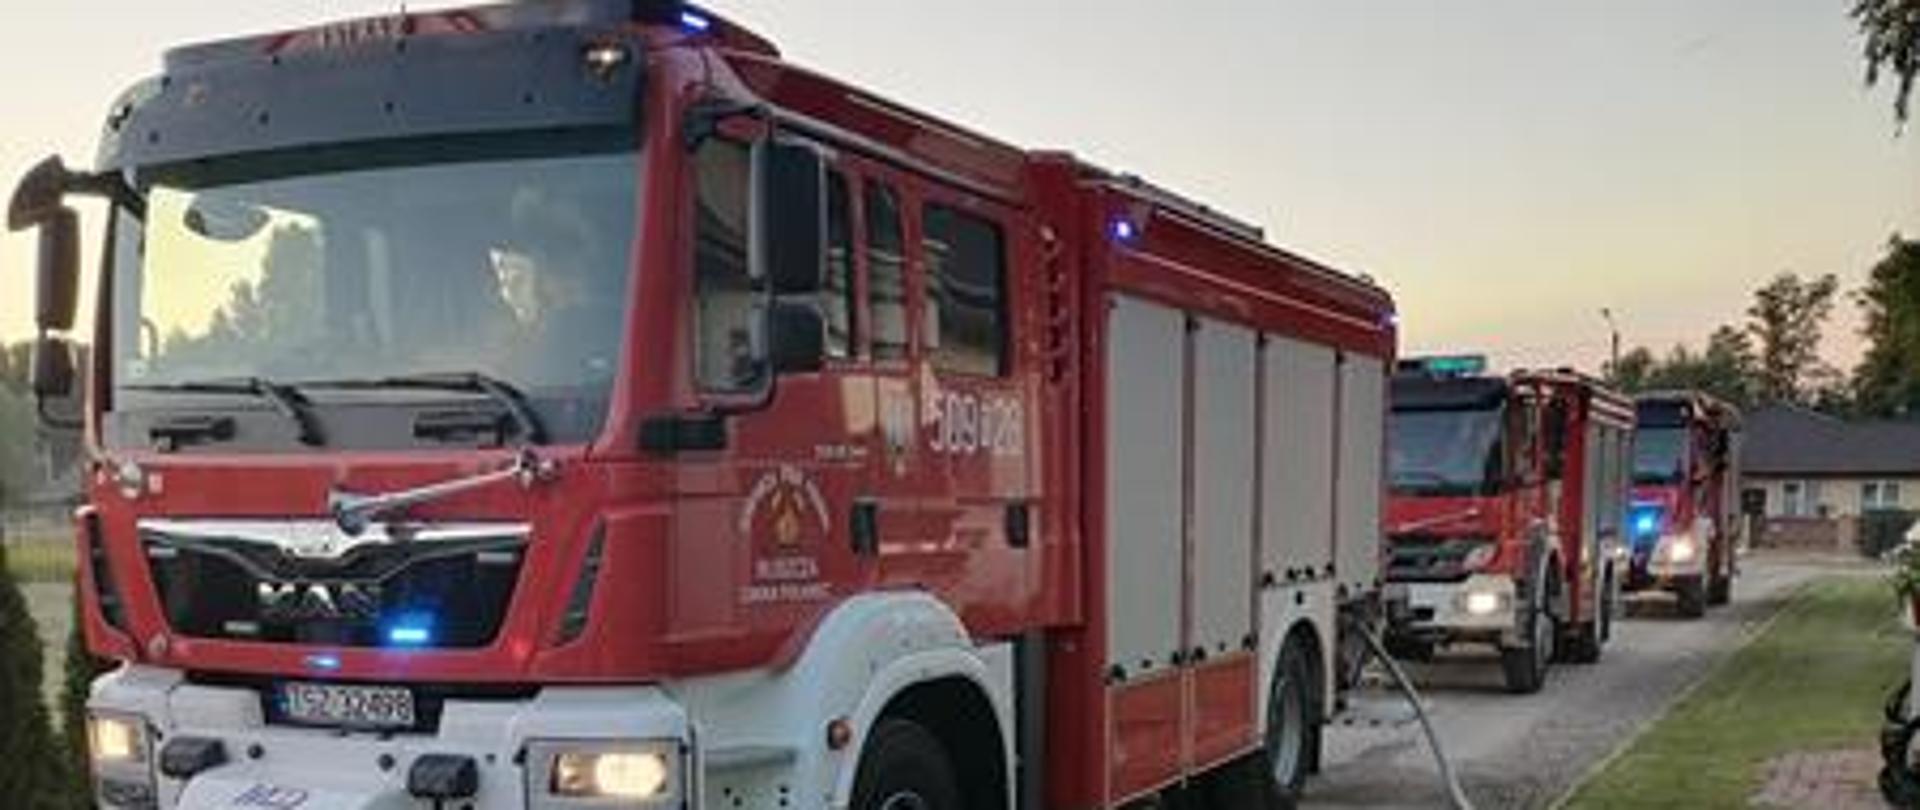 Działania ratownicze podczas pożaru kotłowni w miejscowości Winnica